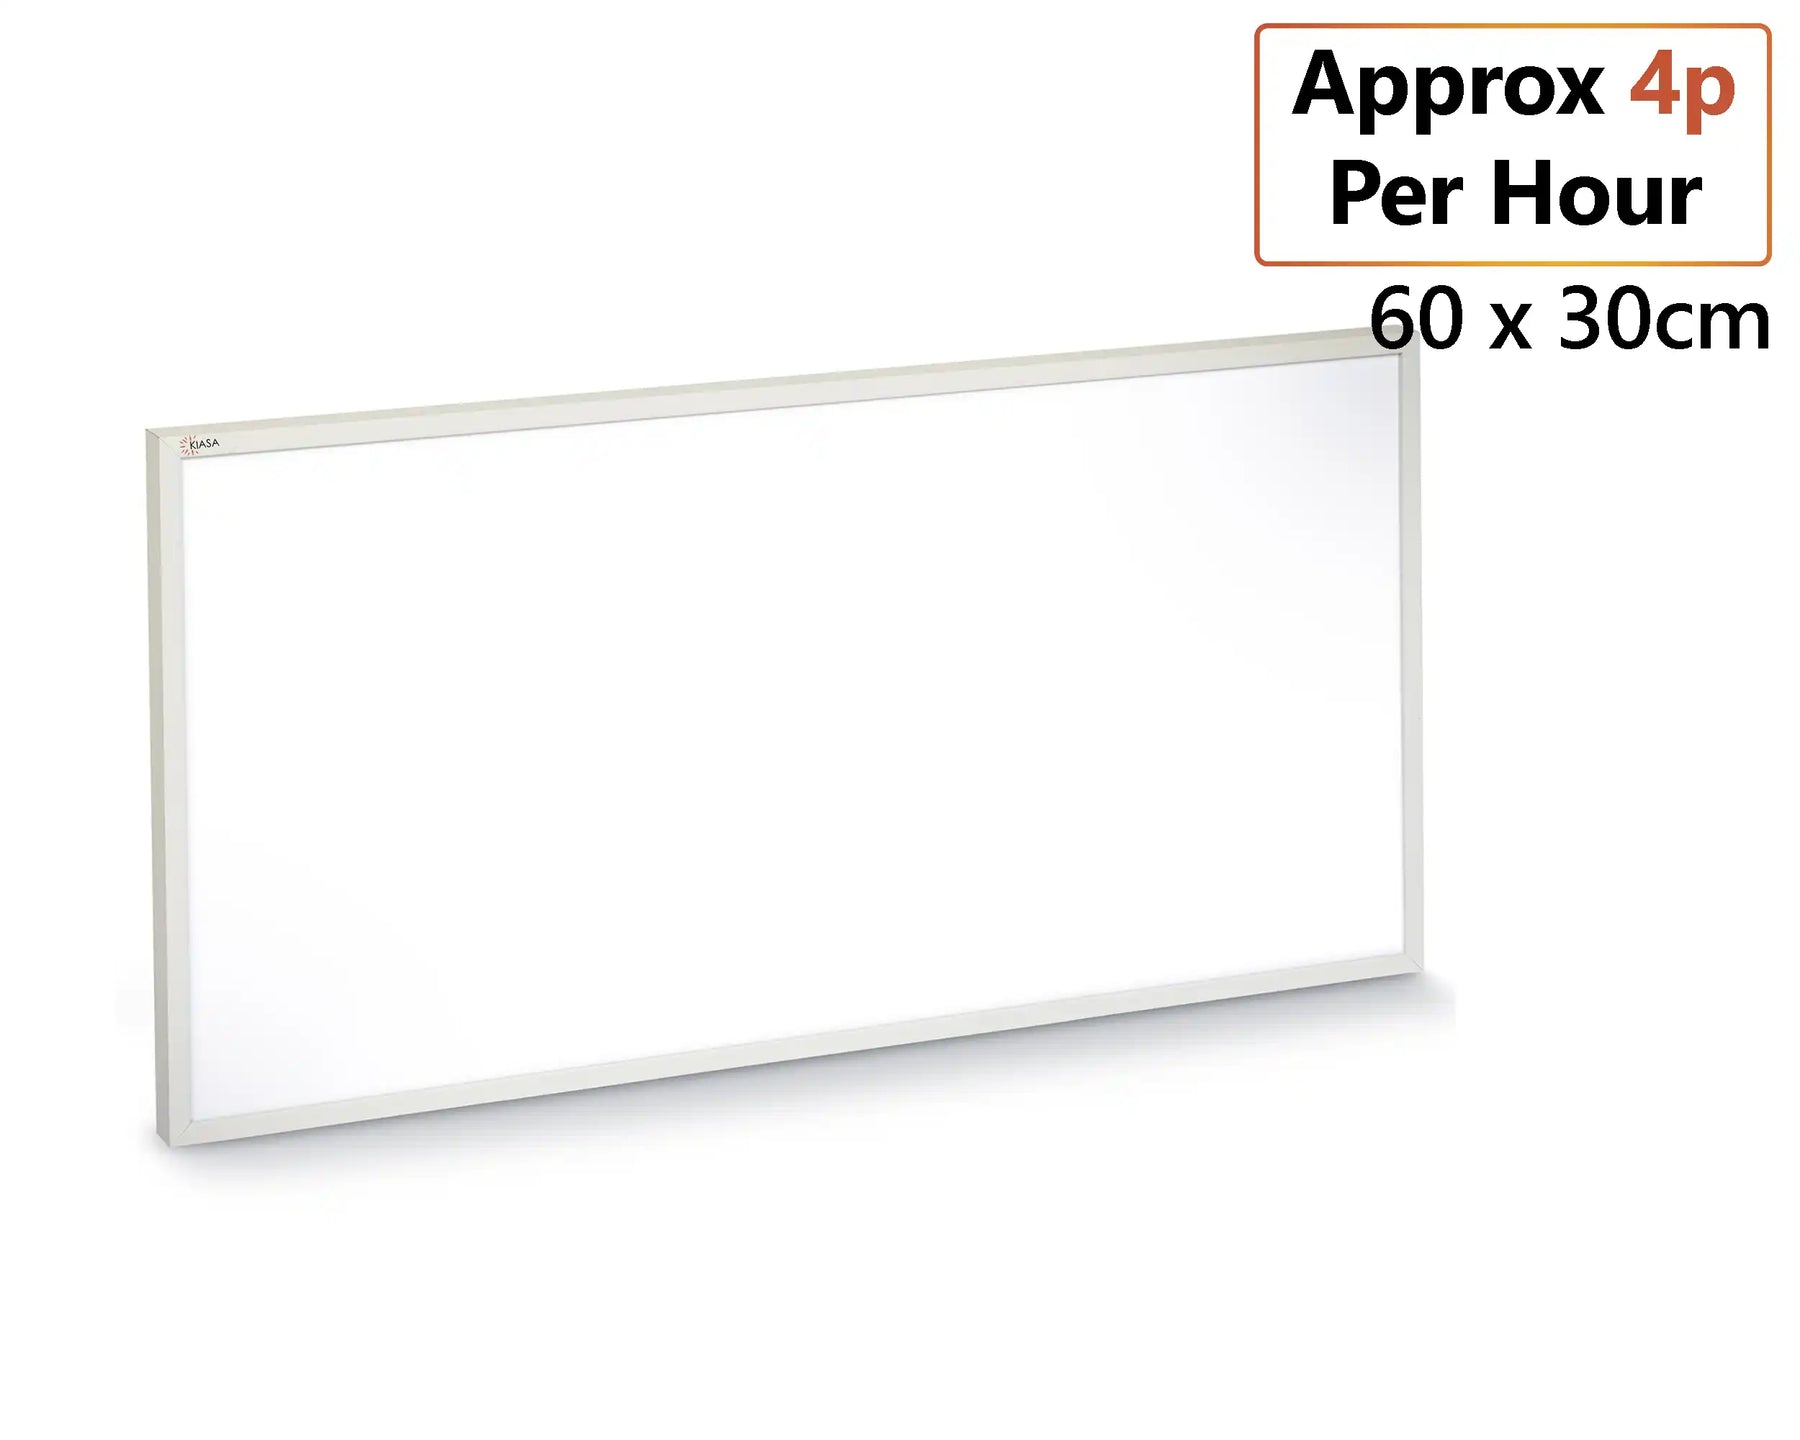 Kiasa Infrared Panel 180w - White Classic 60cm x 30cm